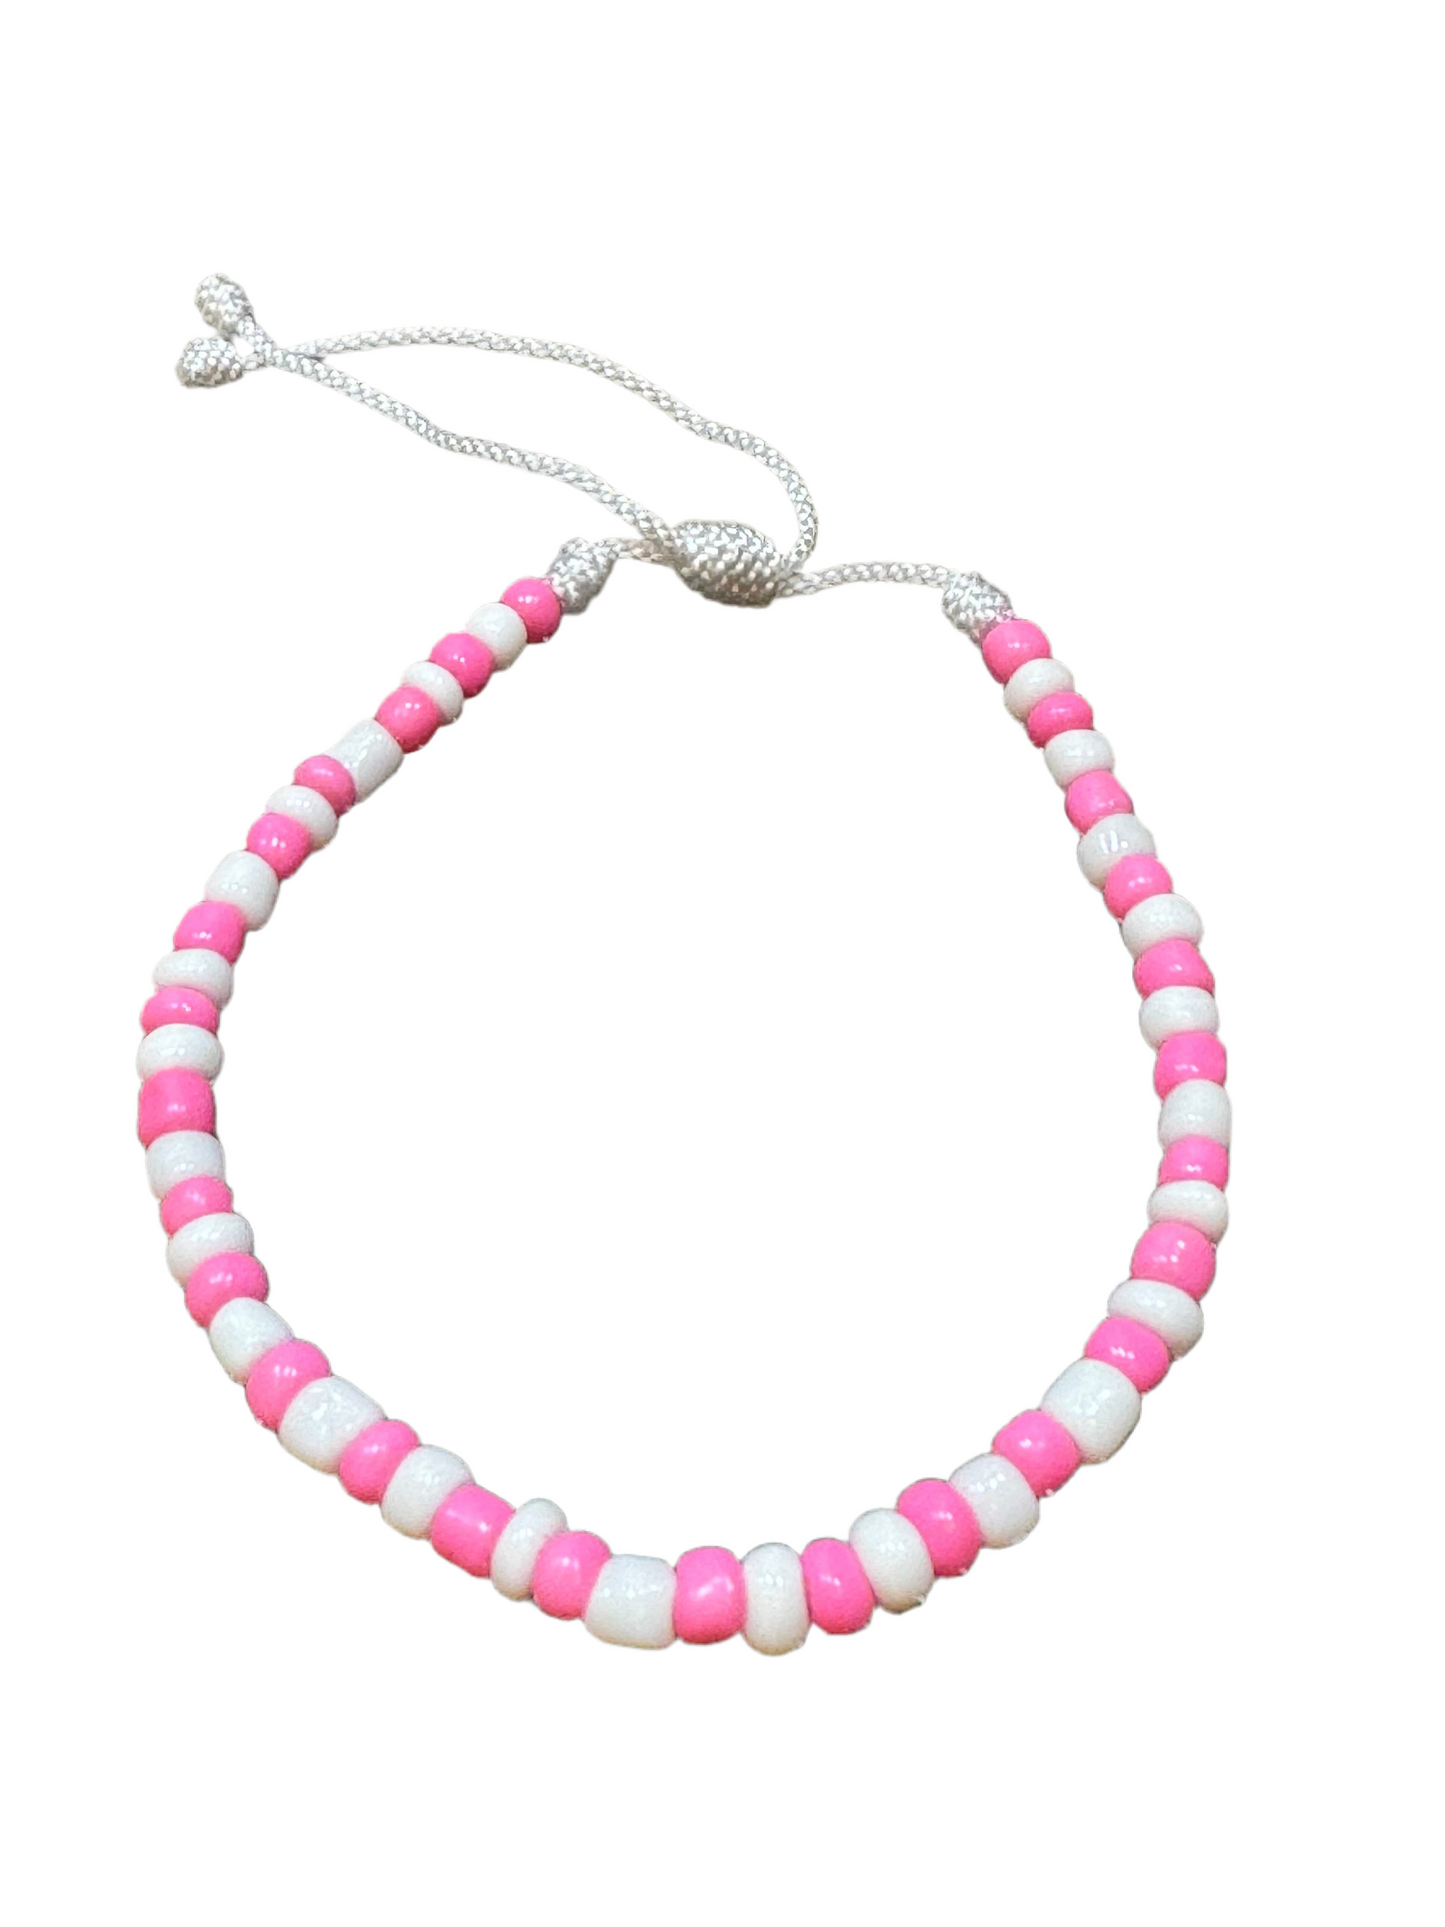 Handmade Pull Tie Beaded String Pink and White  Bracelet